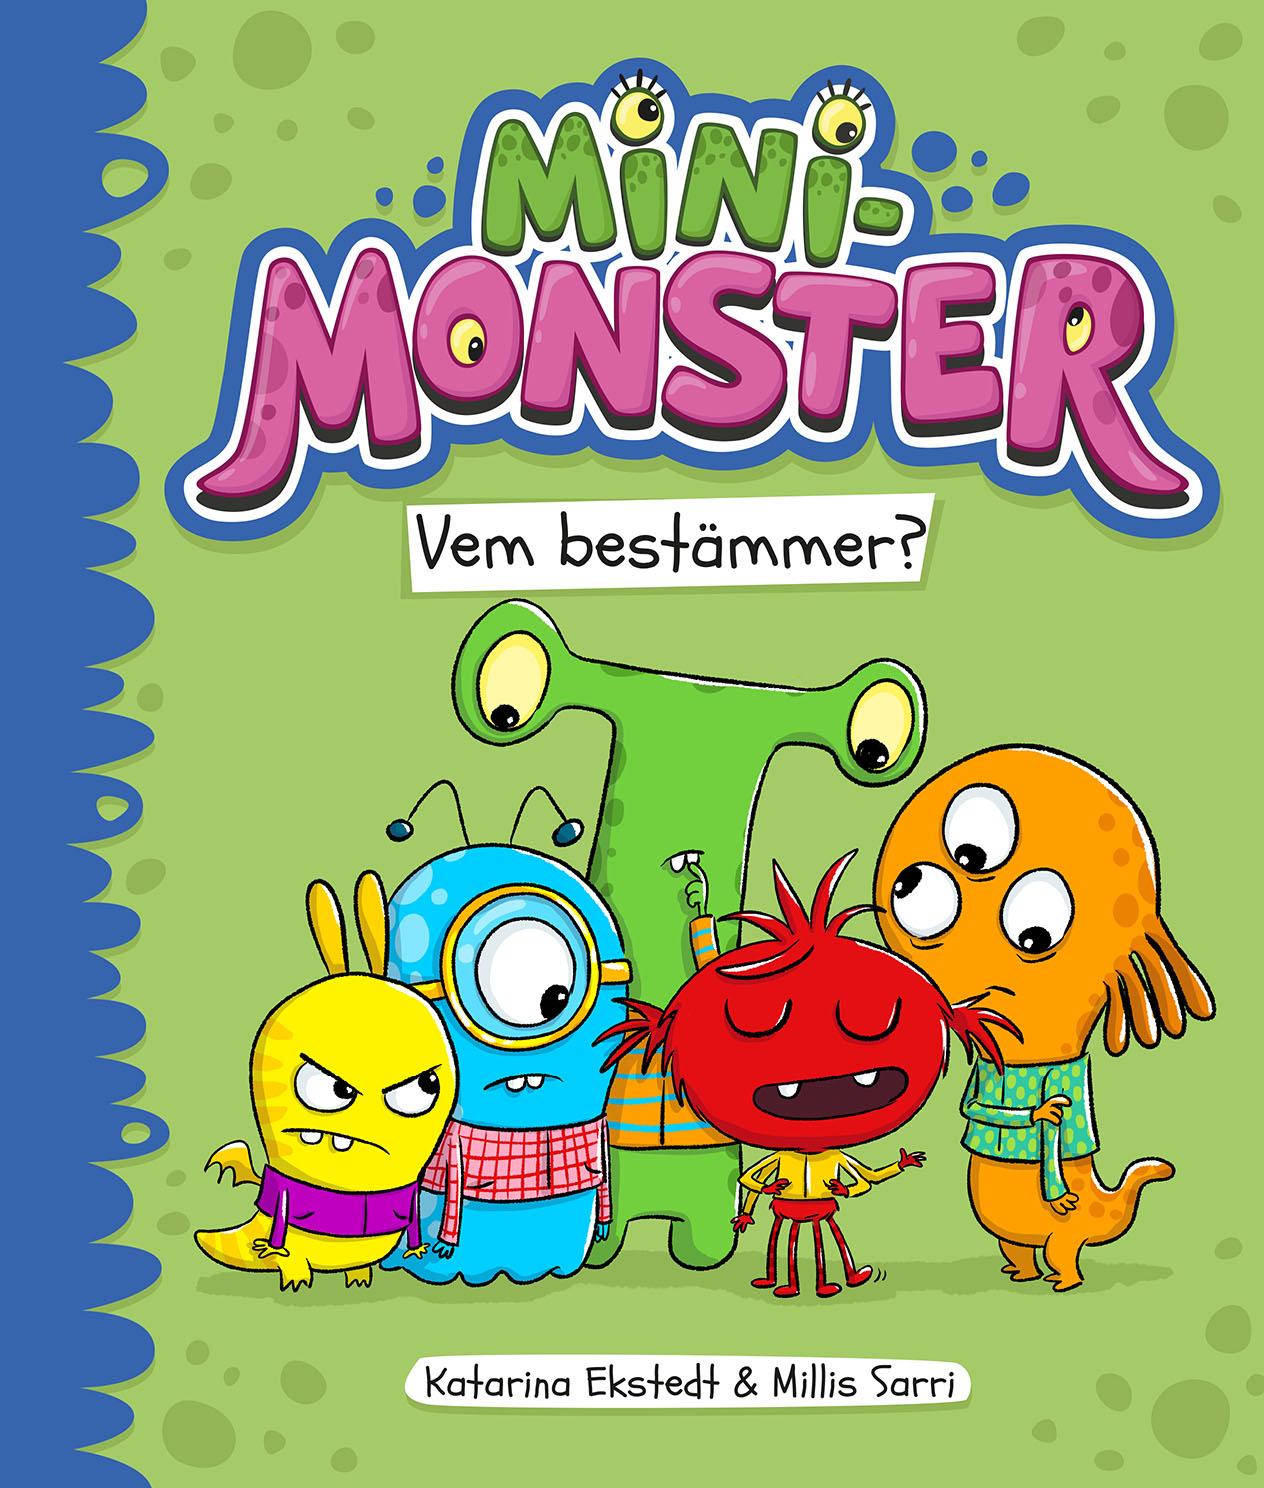 "Minimonster - Vem bestämmer?" av Katarina Ekstedt & Millis Sarri